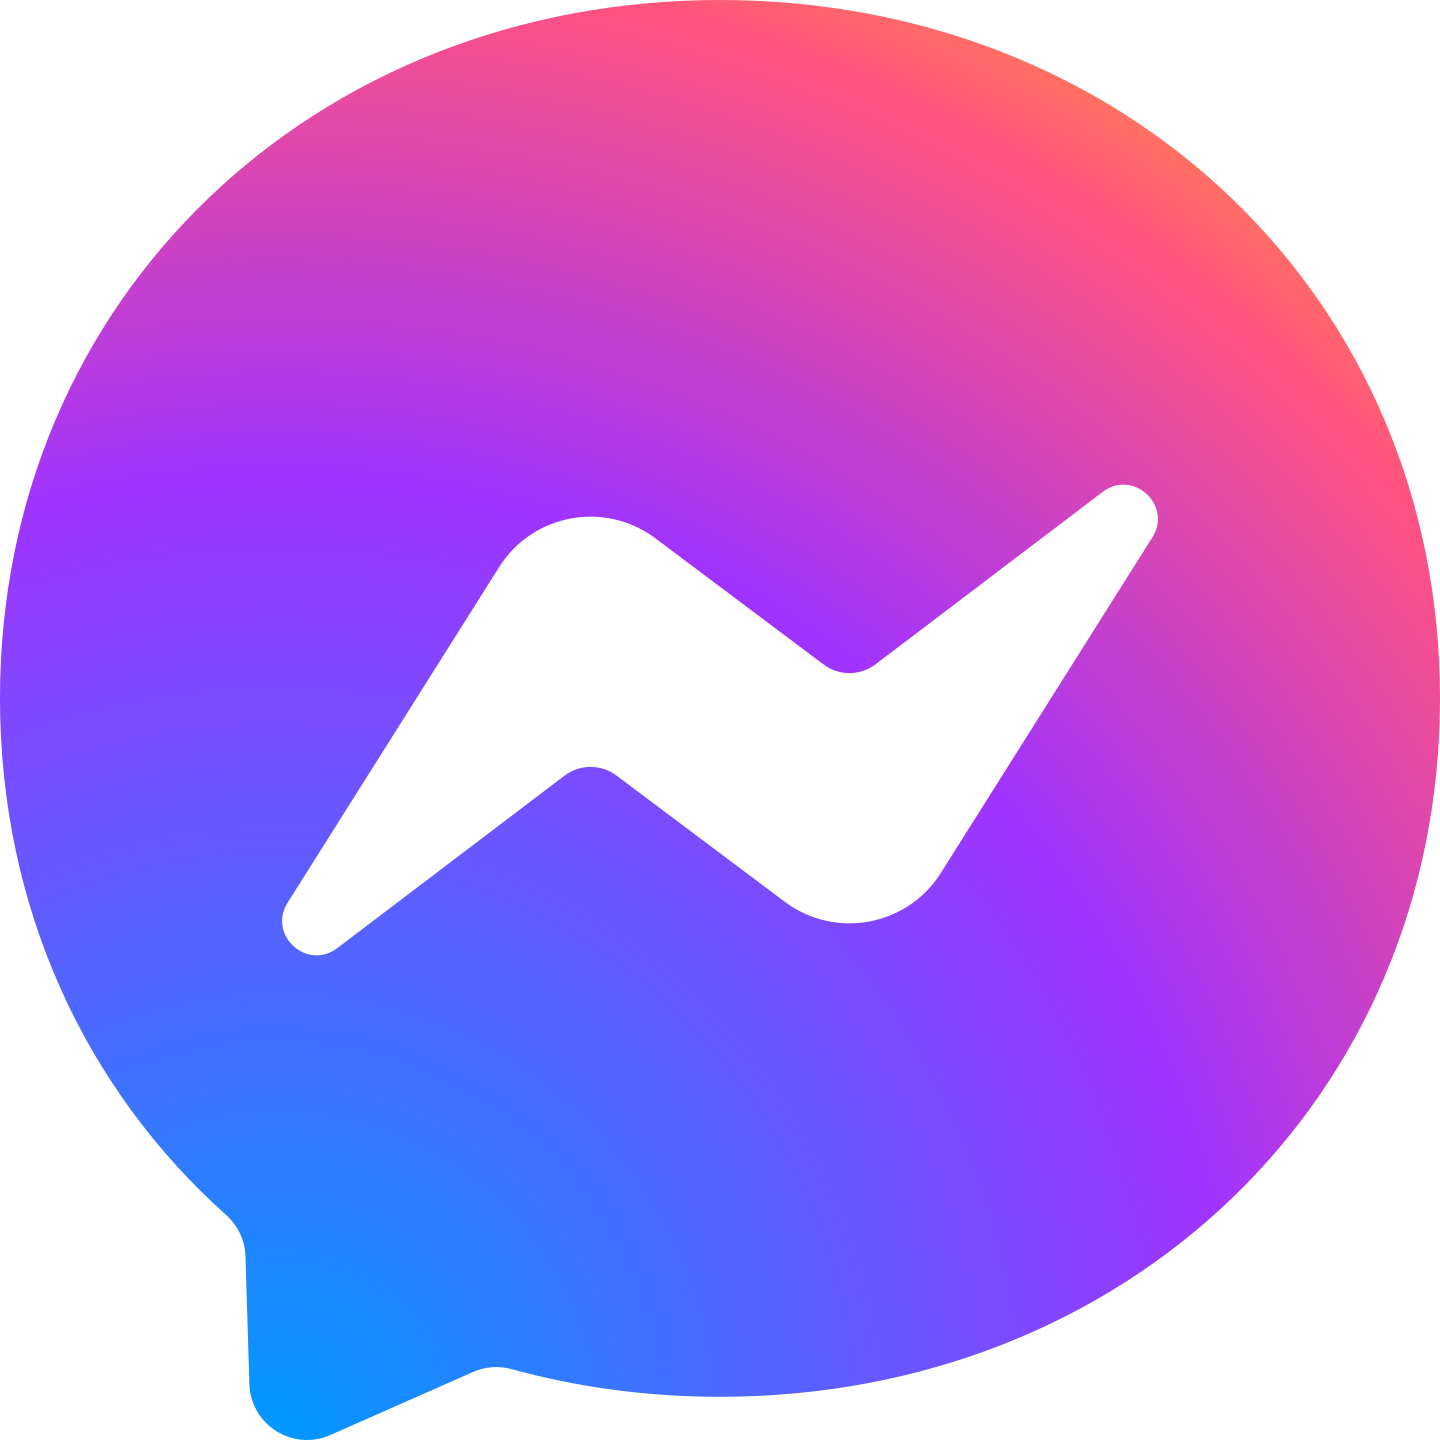 facebook messenger logo 2 1 - Facebook Messenger Logo